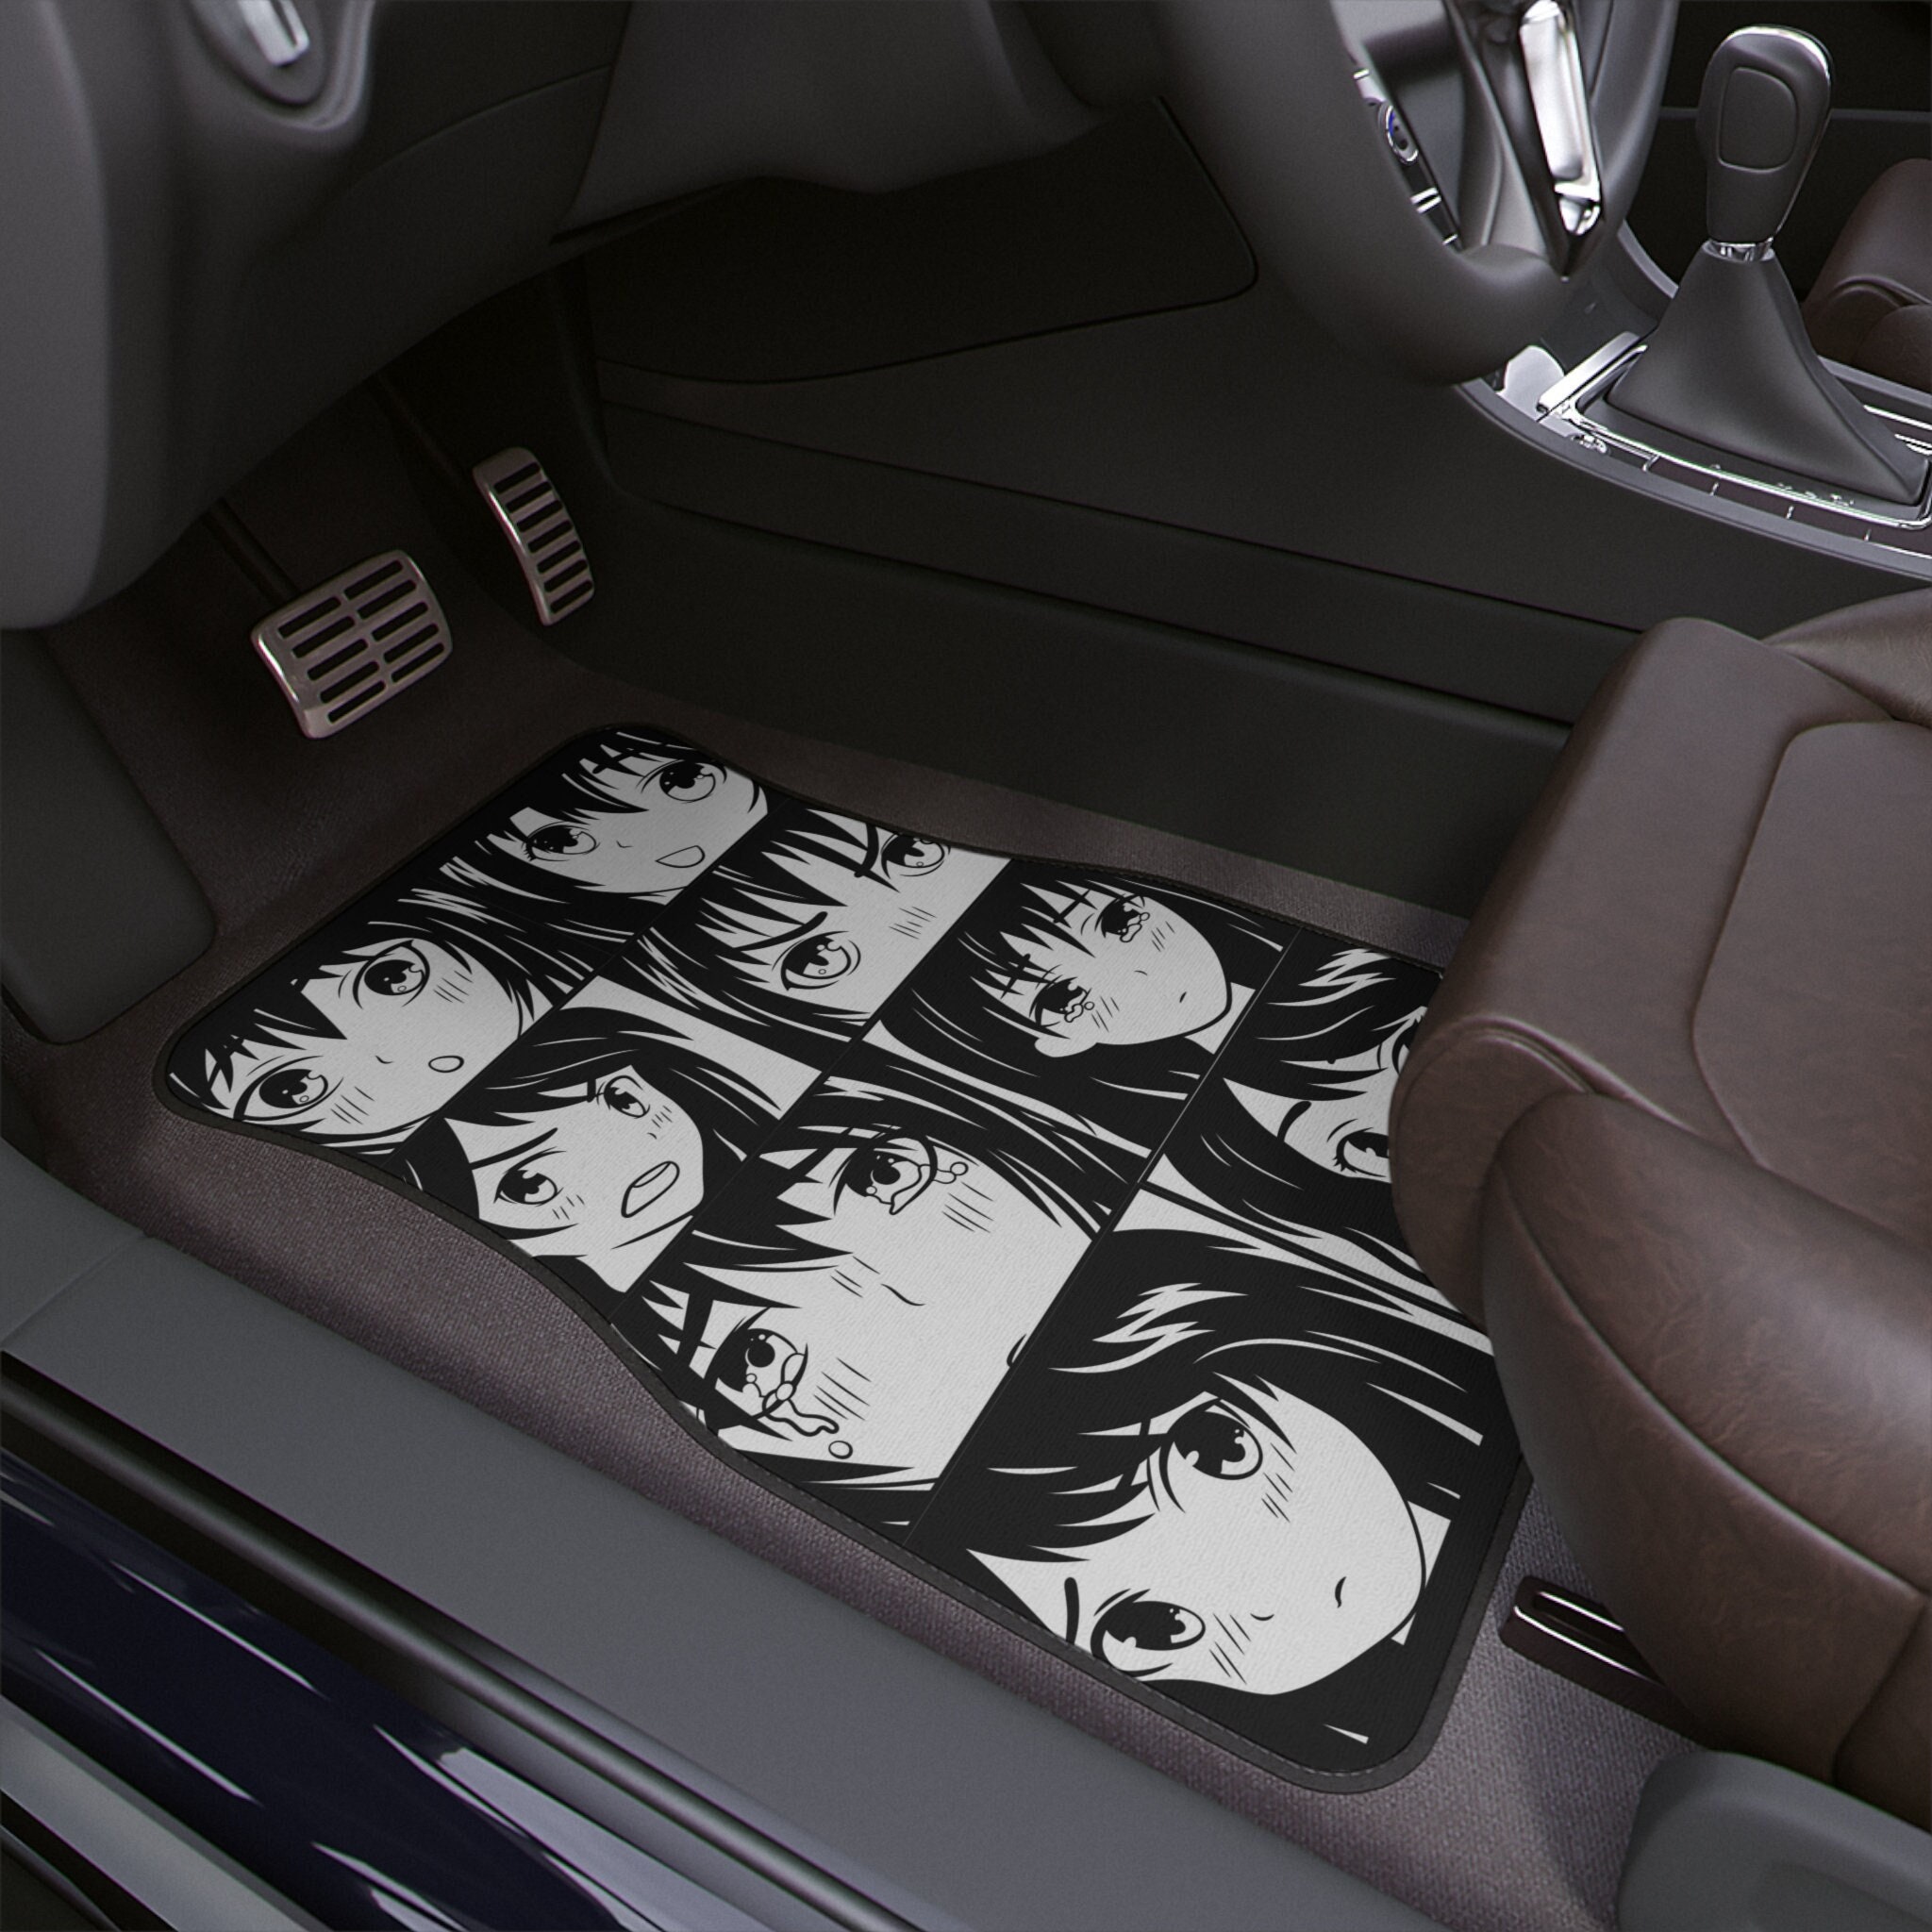 Anime Car Mats - Girls Racing Fabric Car Floor Mats Interior